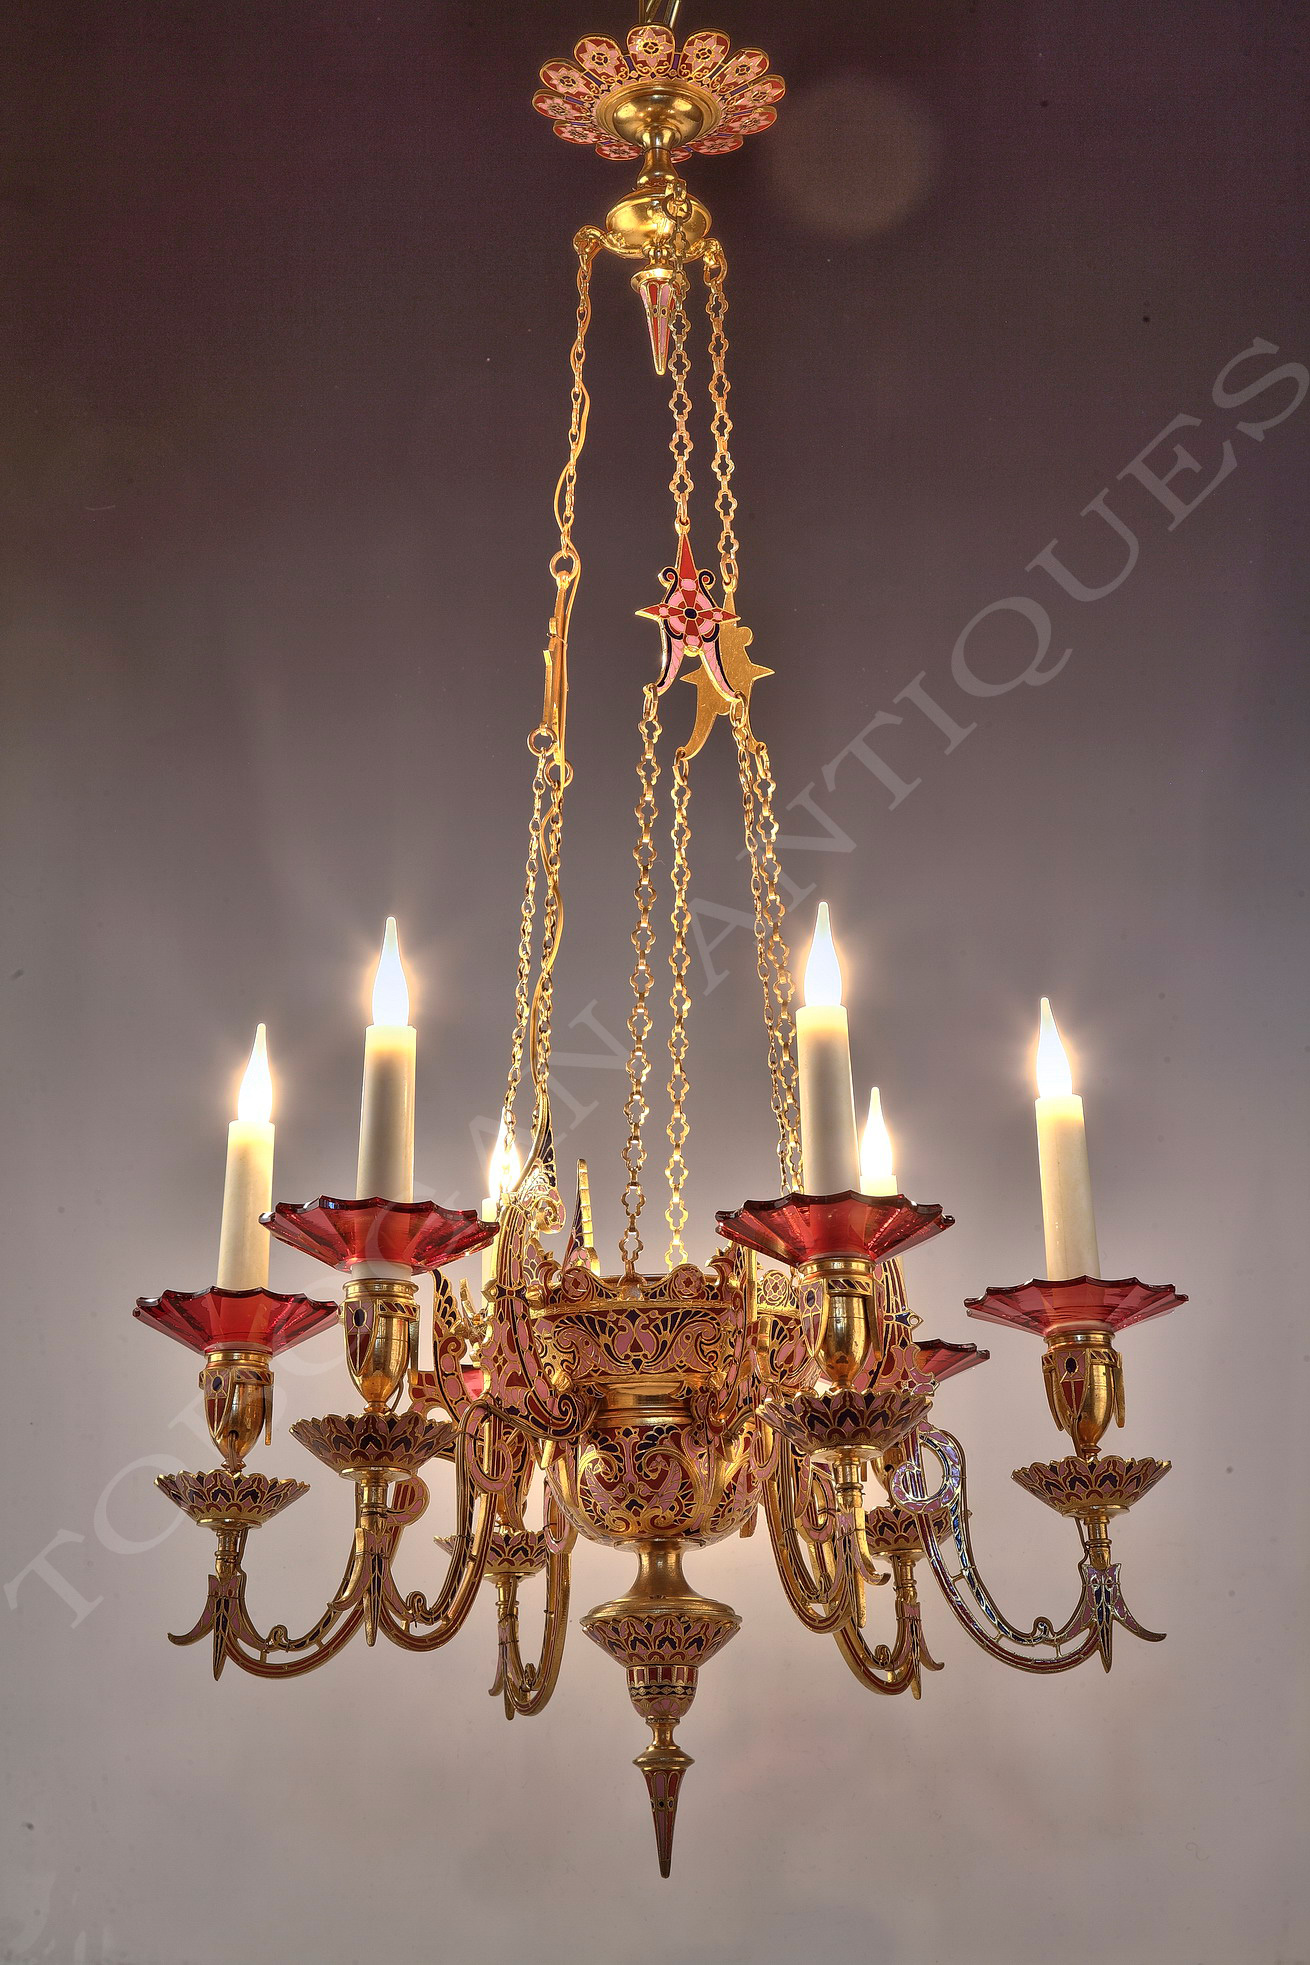 F. Barbedienne <br/> An oriental style chandelier